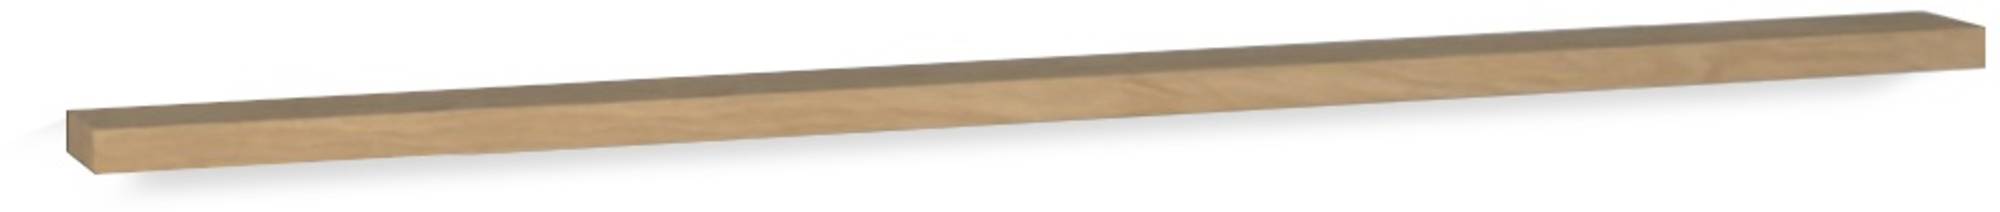 Pure Wood massief eiken planchet 140x12x3cm Old grey